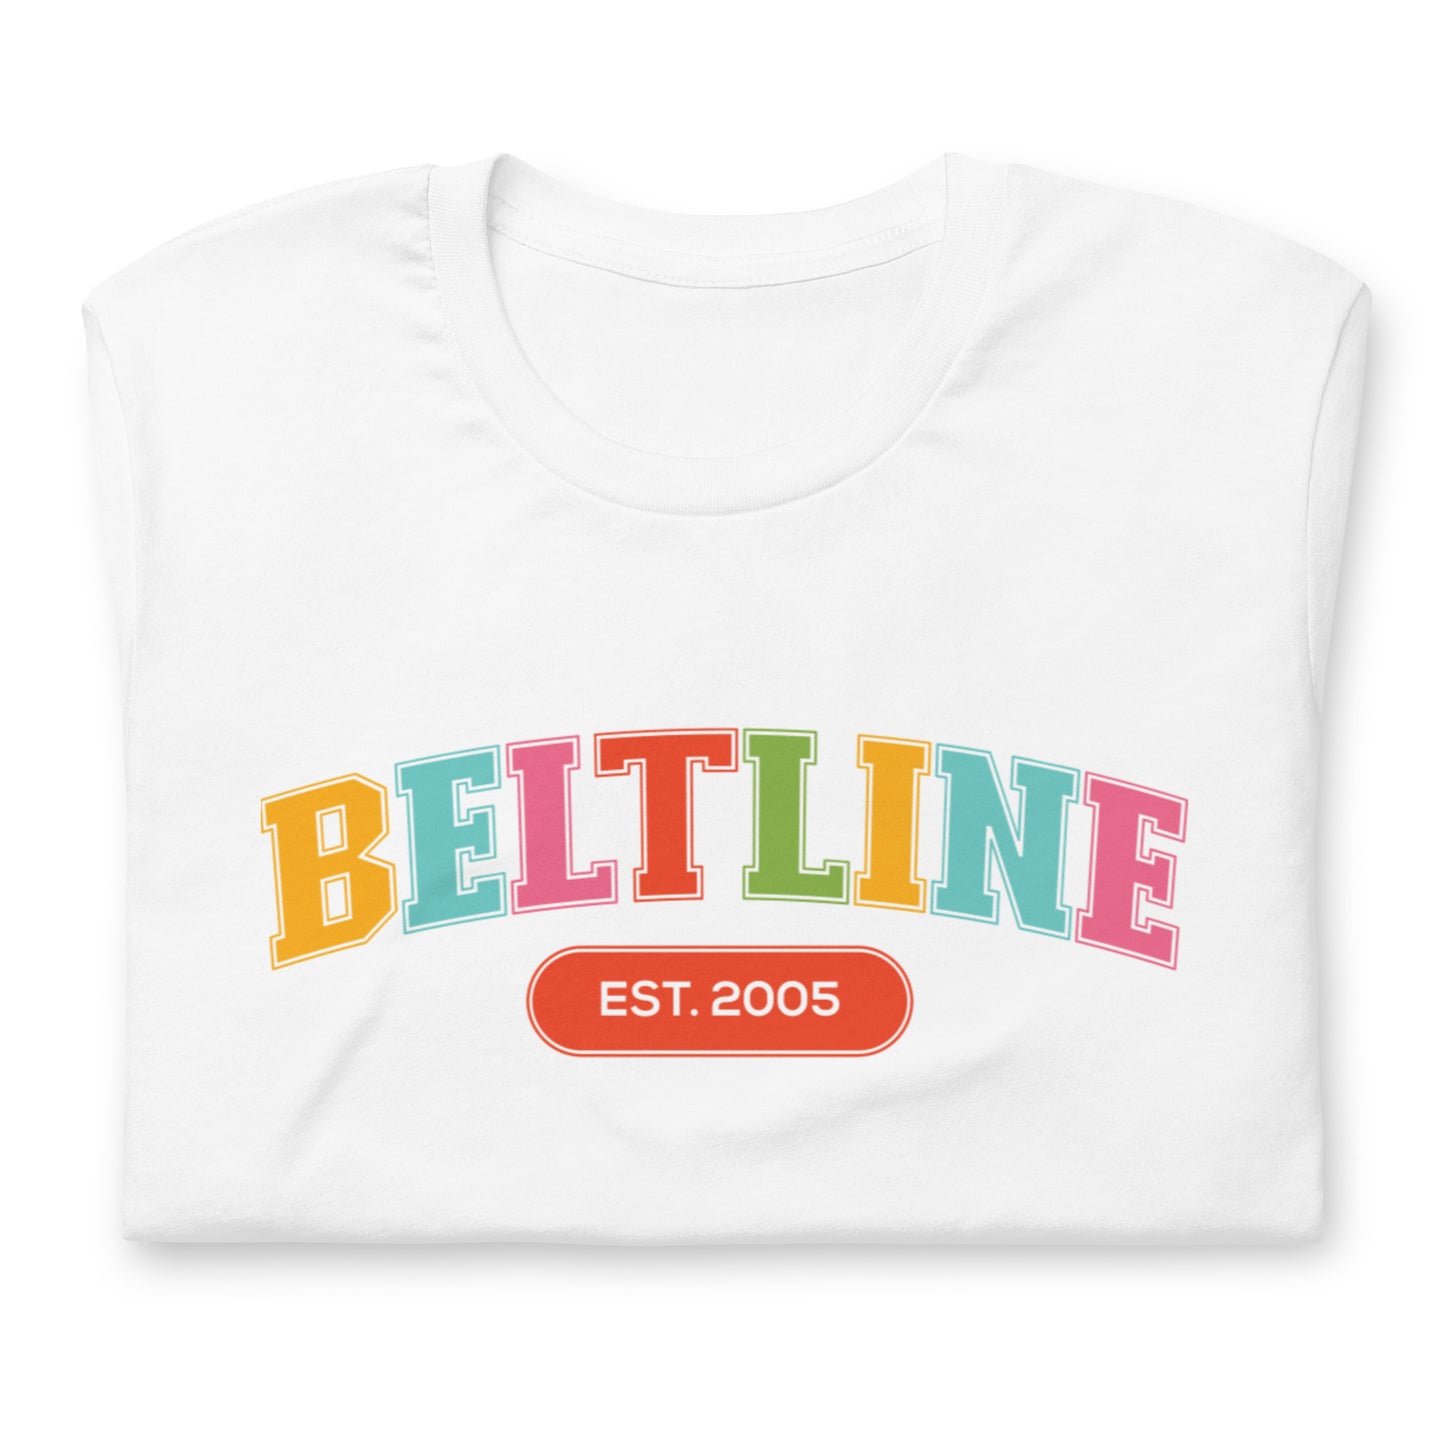 BeltLine Established Unisex Tee - Bright